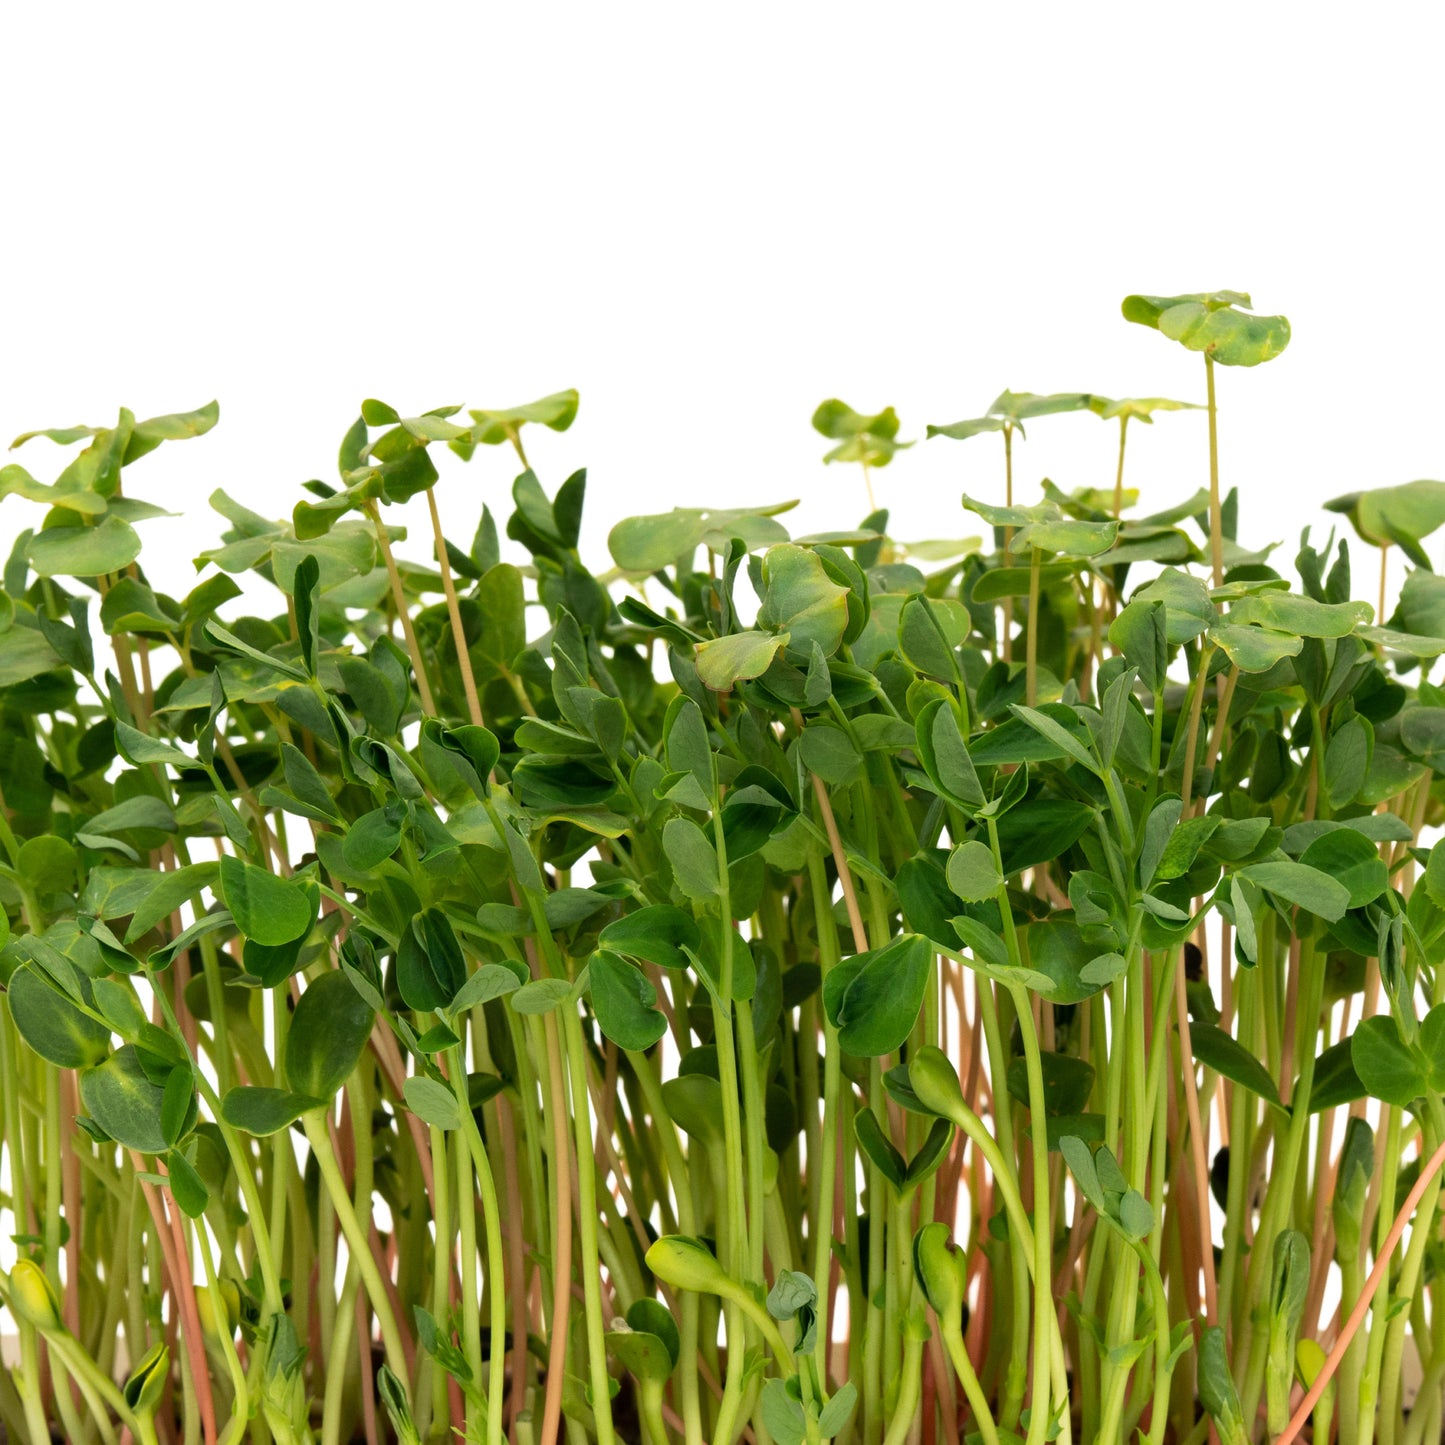 Mumm's Sprouting Seeds Microgreen Salad Mix